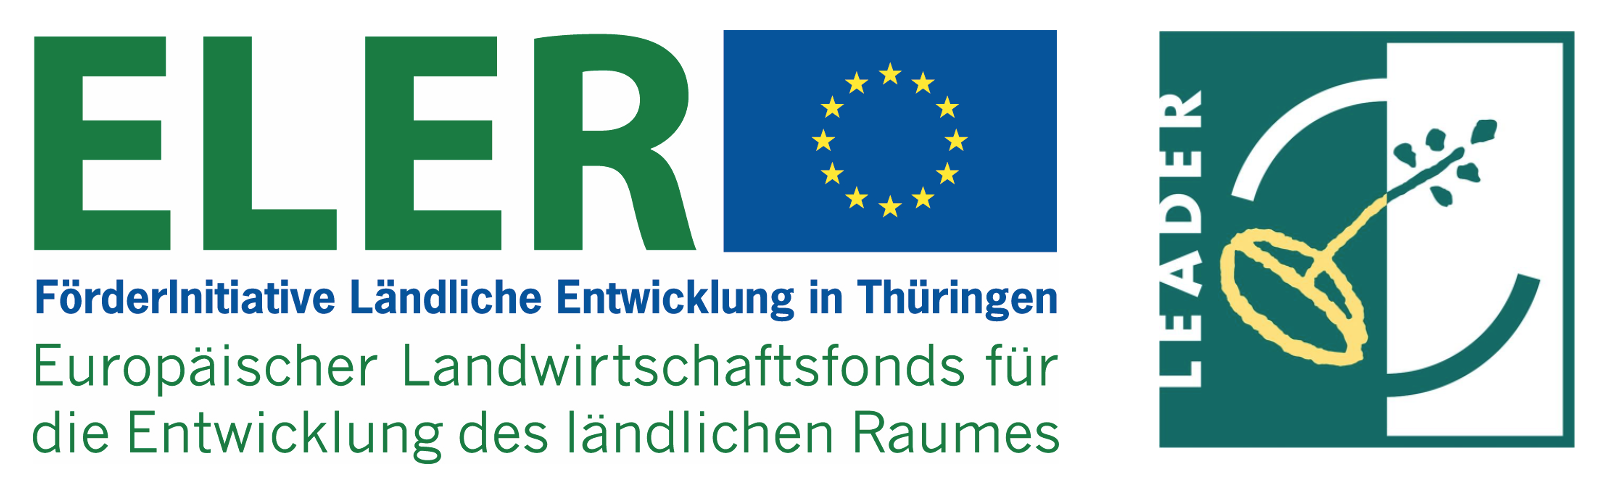 Hier investieren Europa und der Freistaat Thüringen in die ländlichen Gebiete.